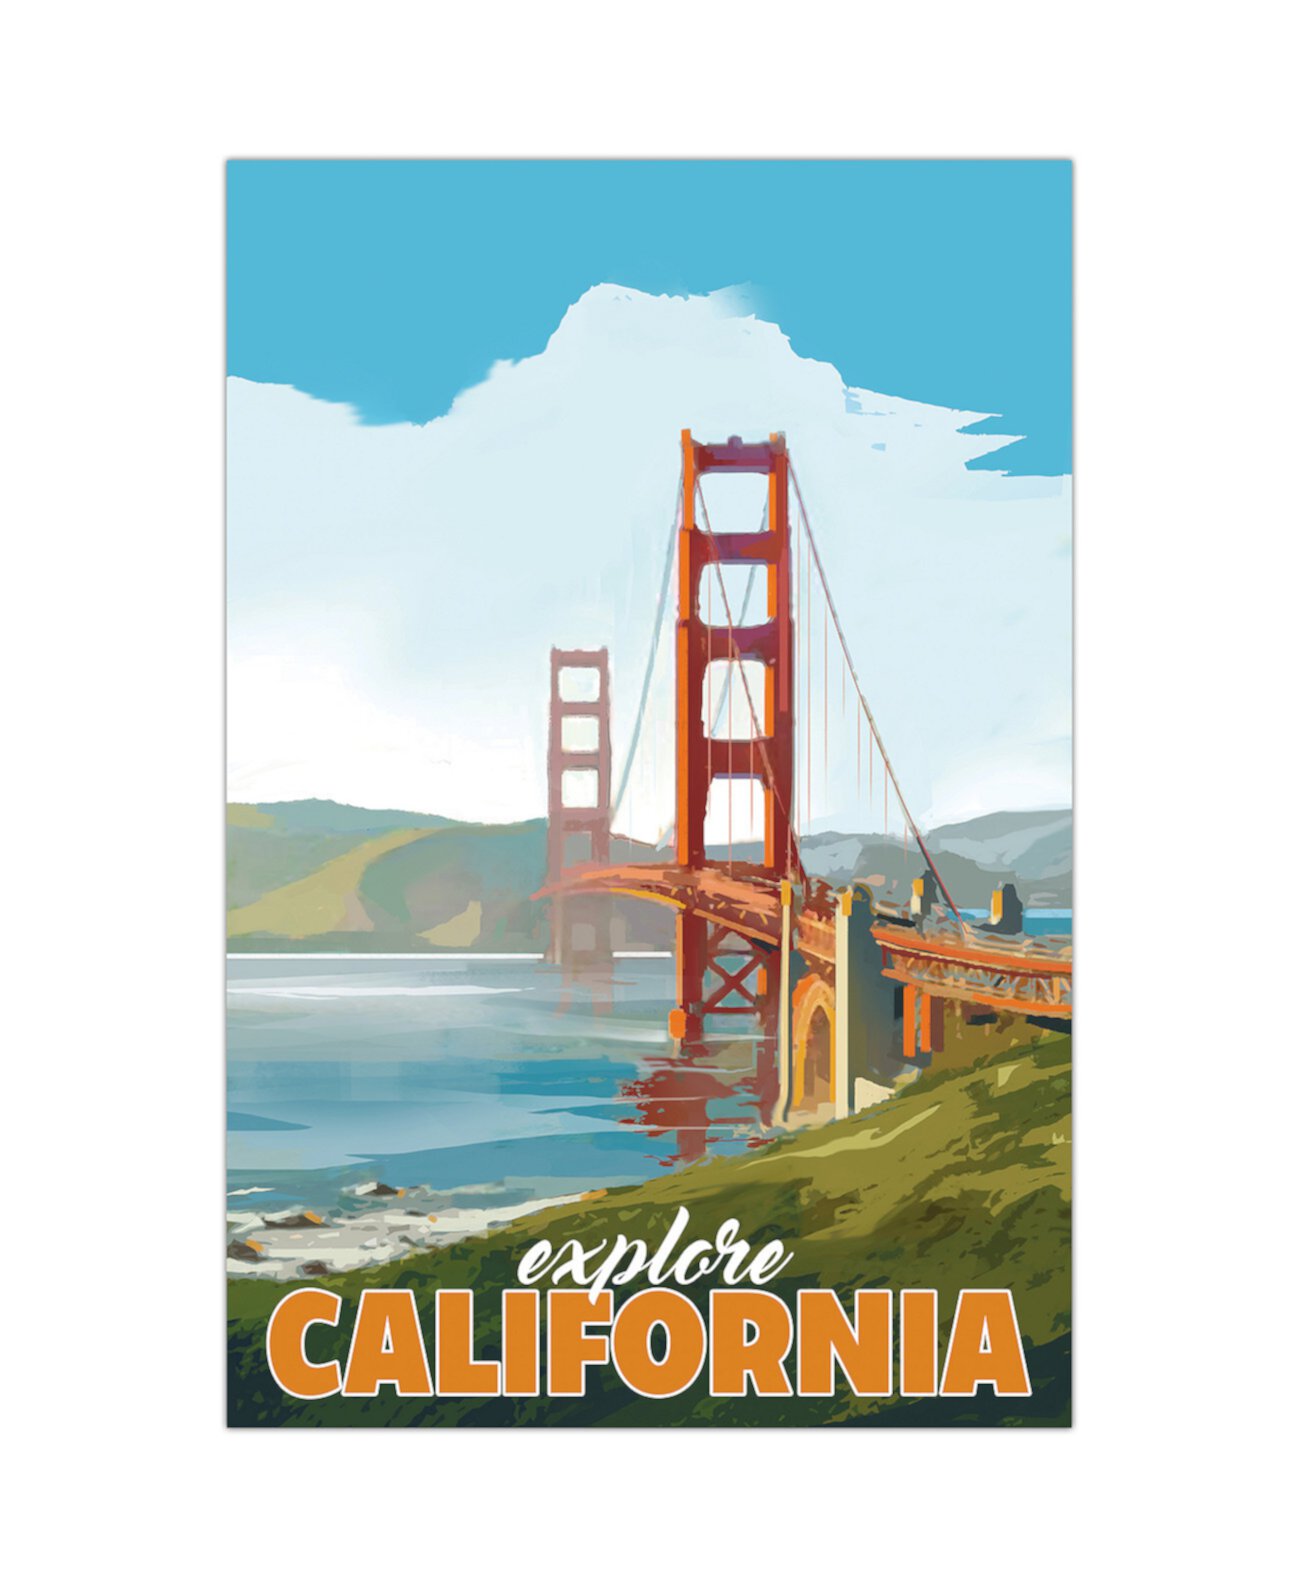 Безрамная свободно плавающая графическая панель из закаленного стекла "Golden Gate Gaze", 36 x 24 x 0,2 дюйма Empire Art Direct